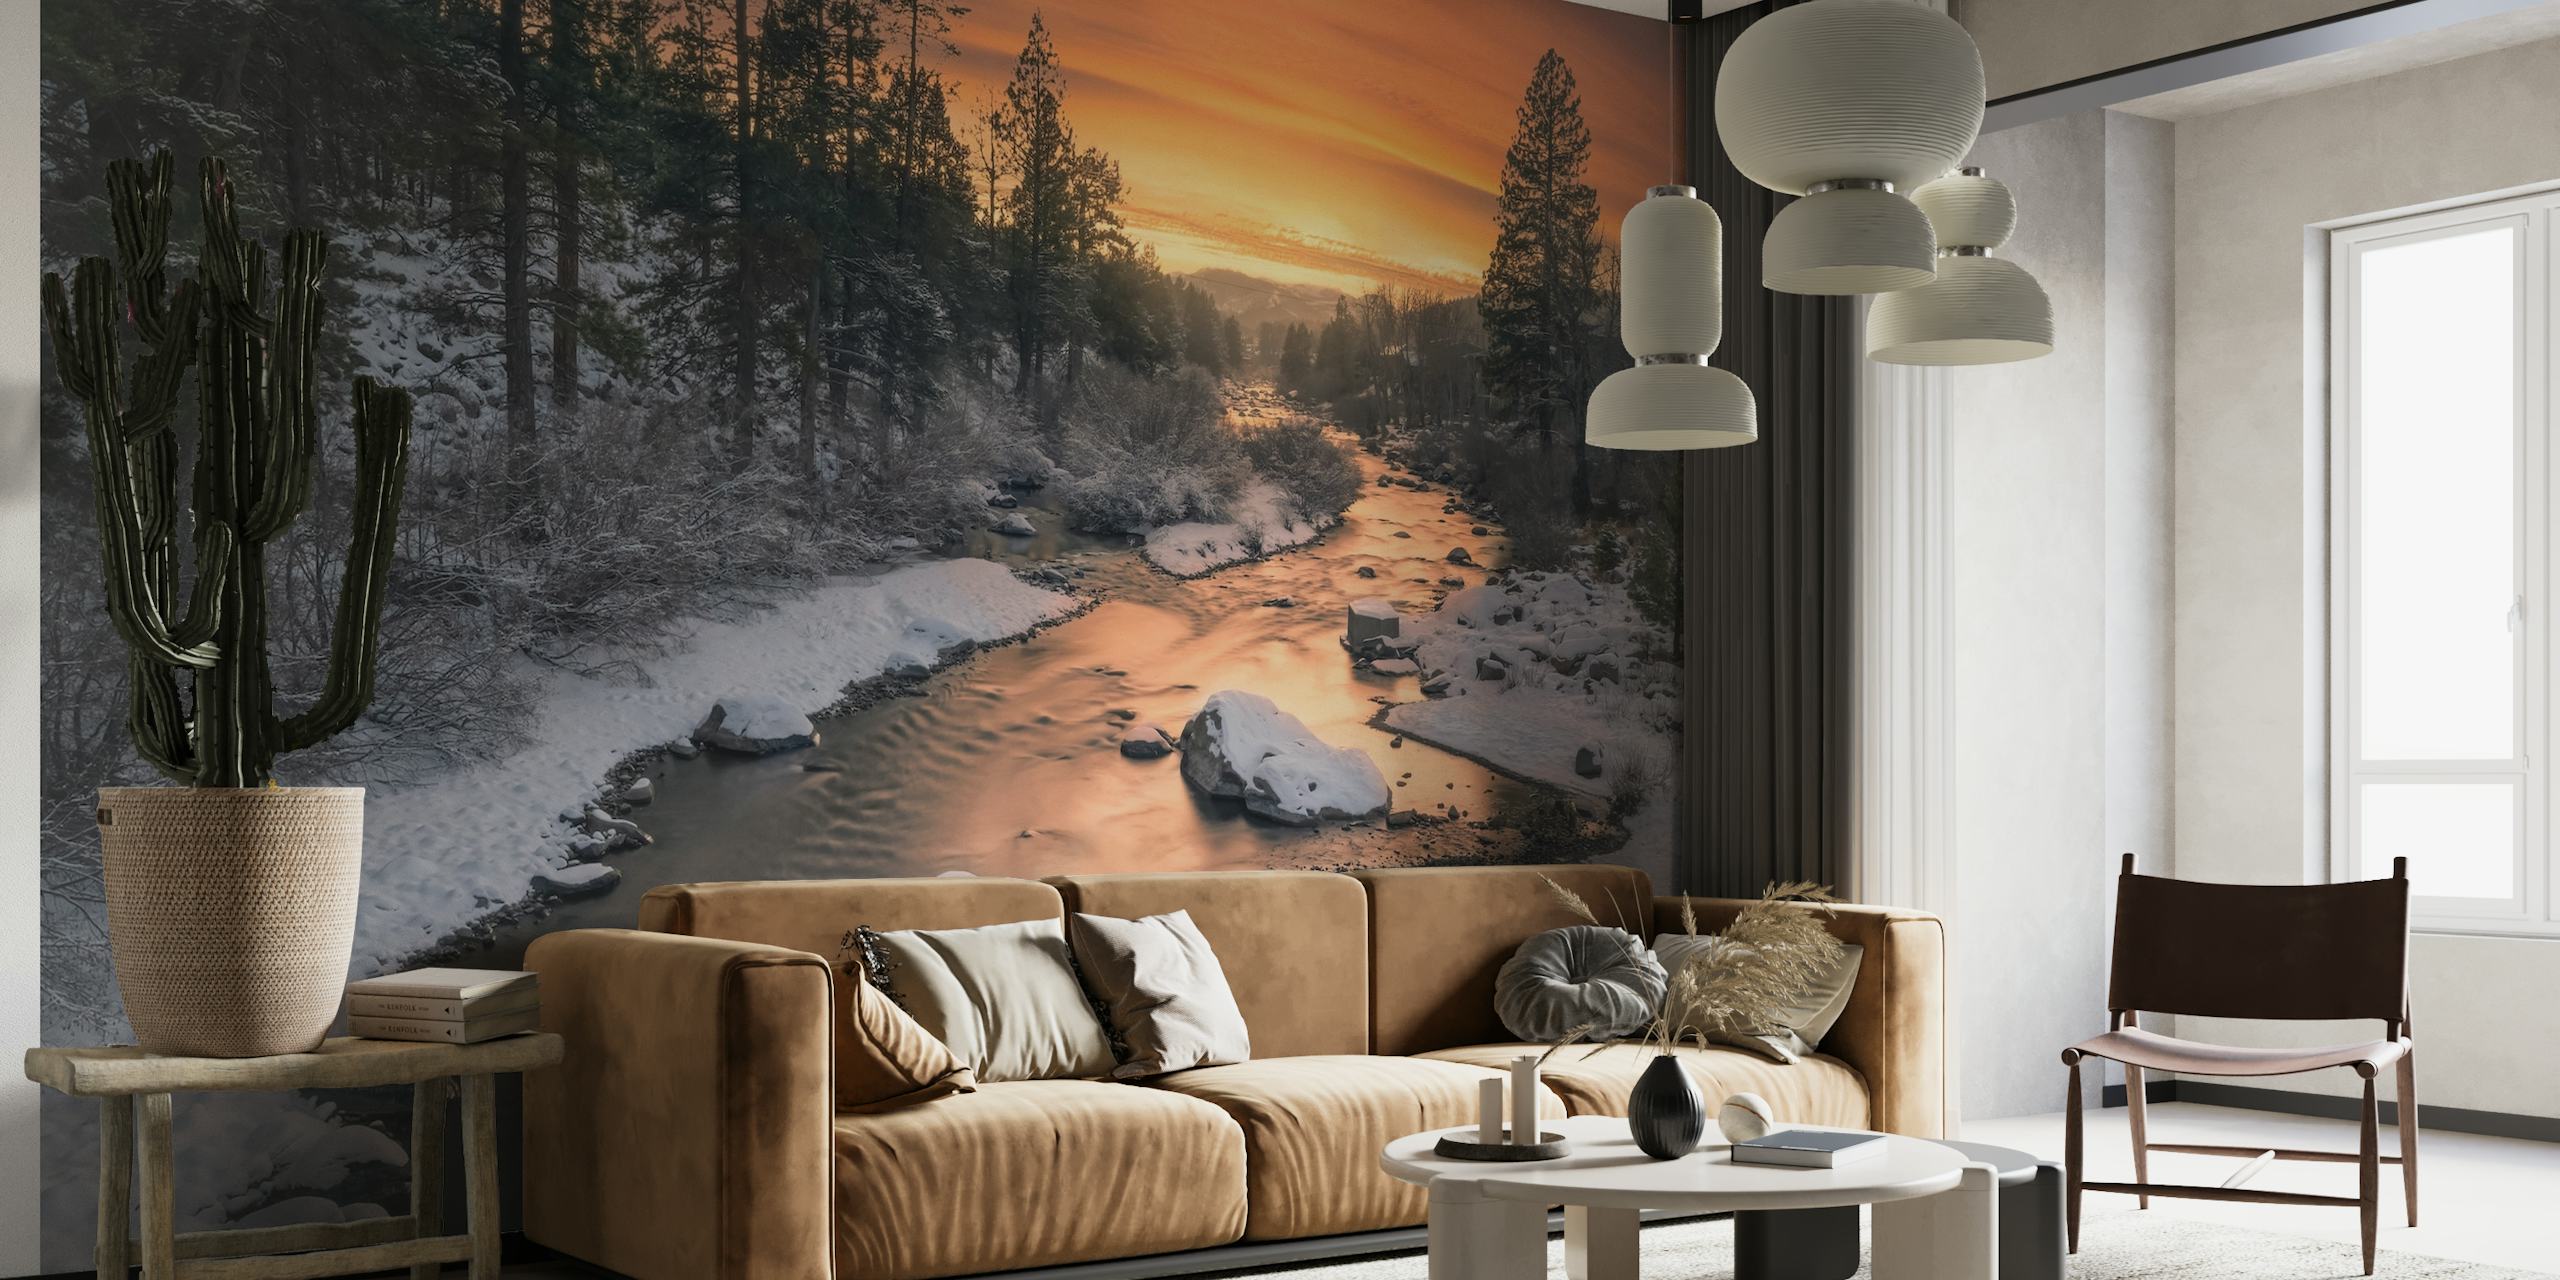 Truckee rivier muurschildering met zonsondergang en besneeuwd landschap